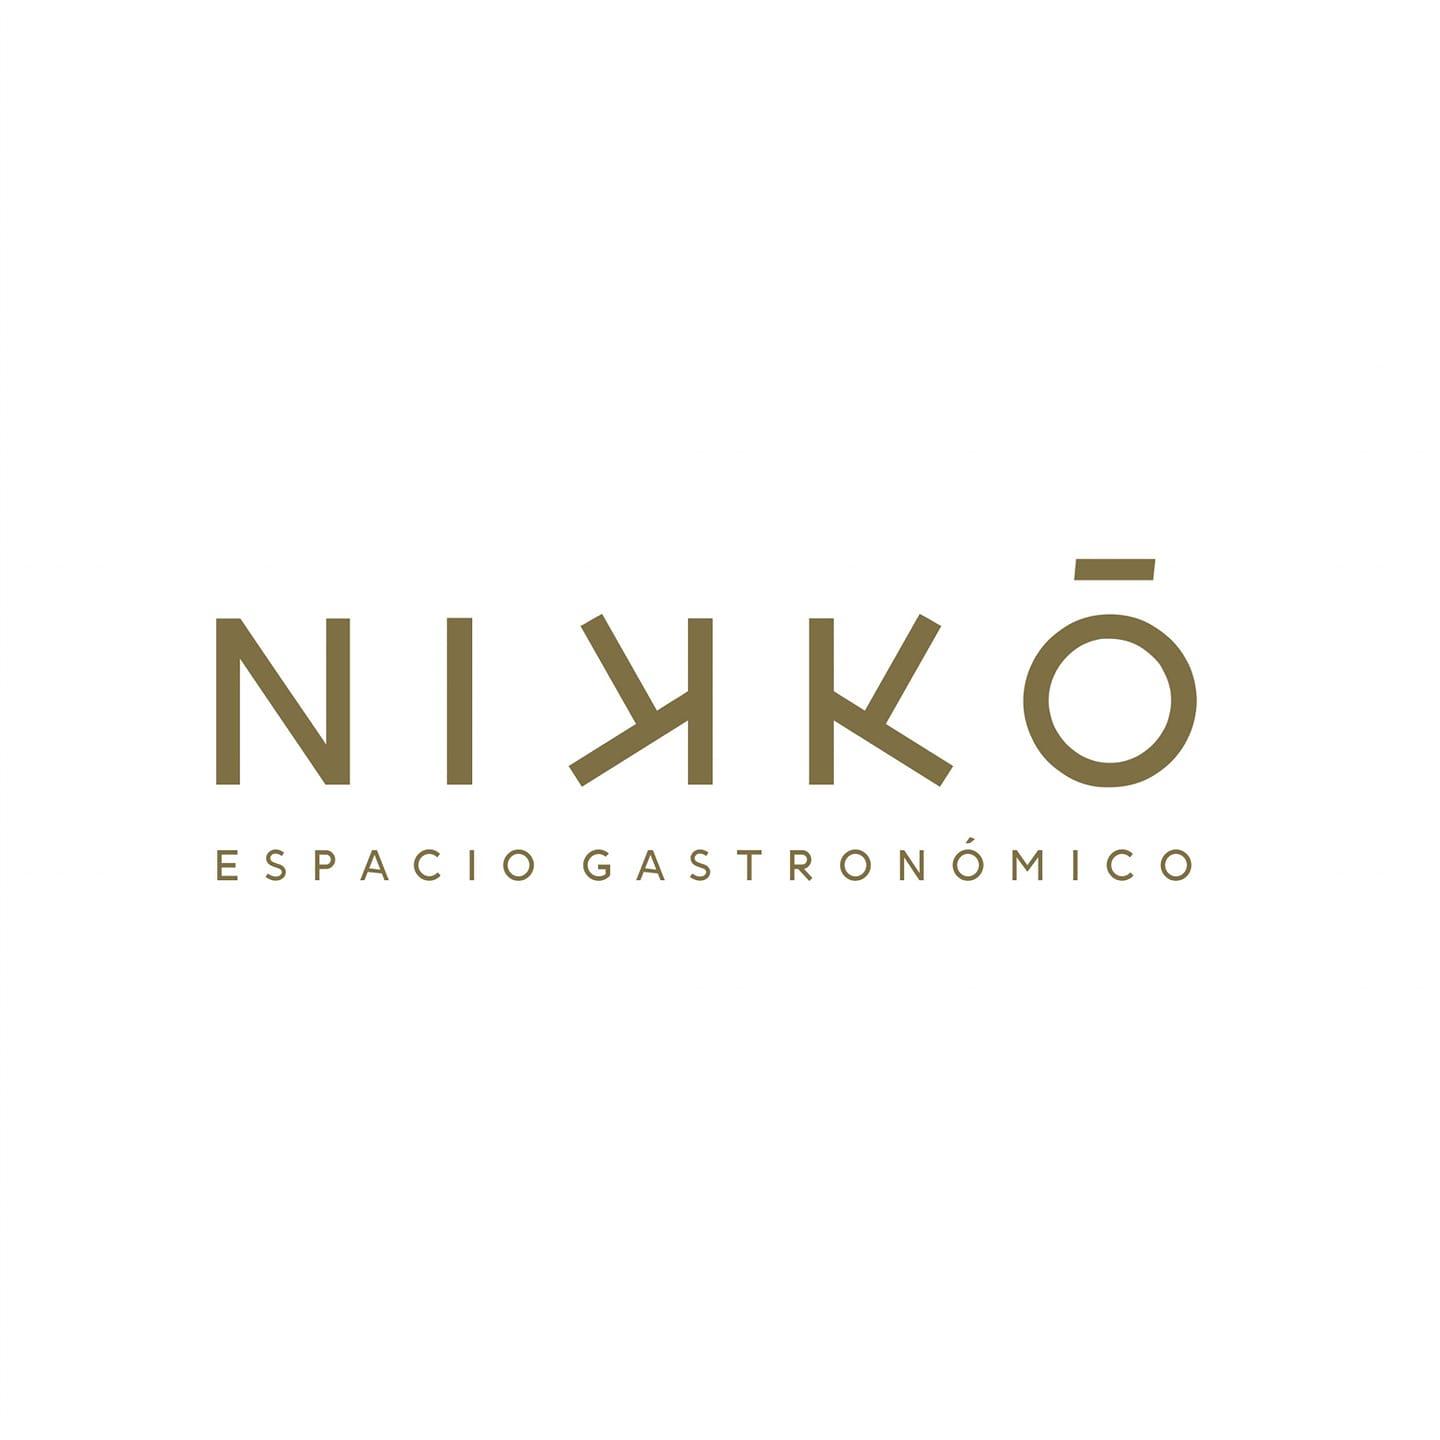 Nikko Espacio Gastronomico Logo